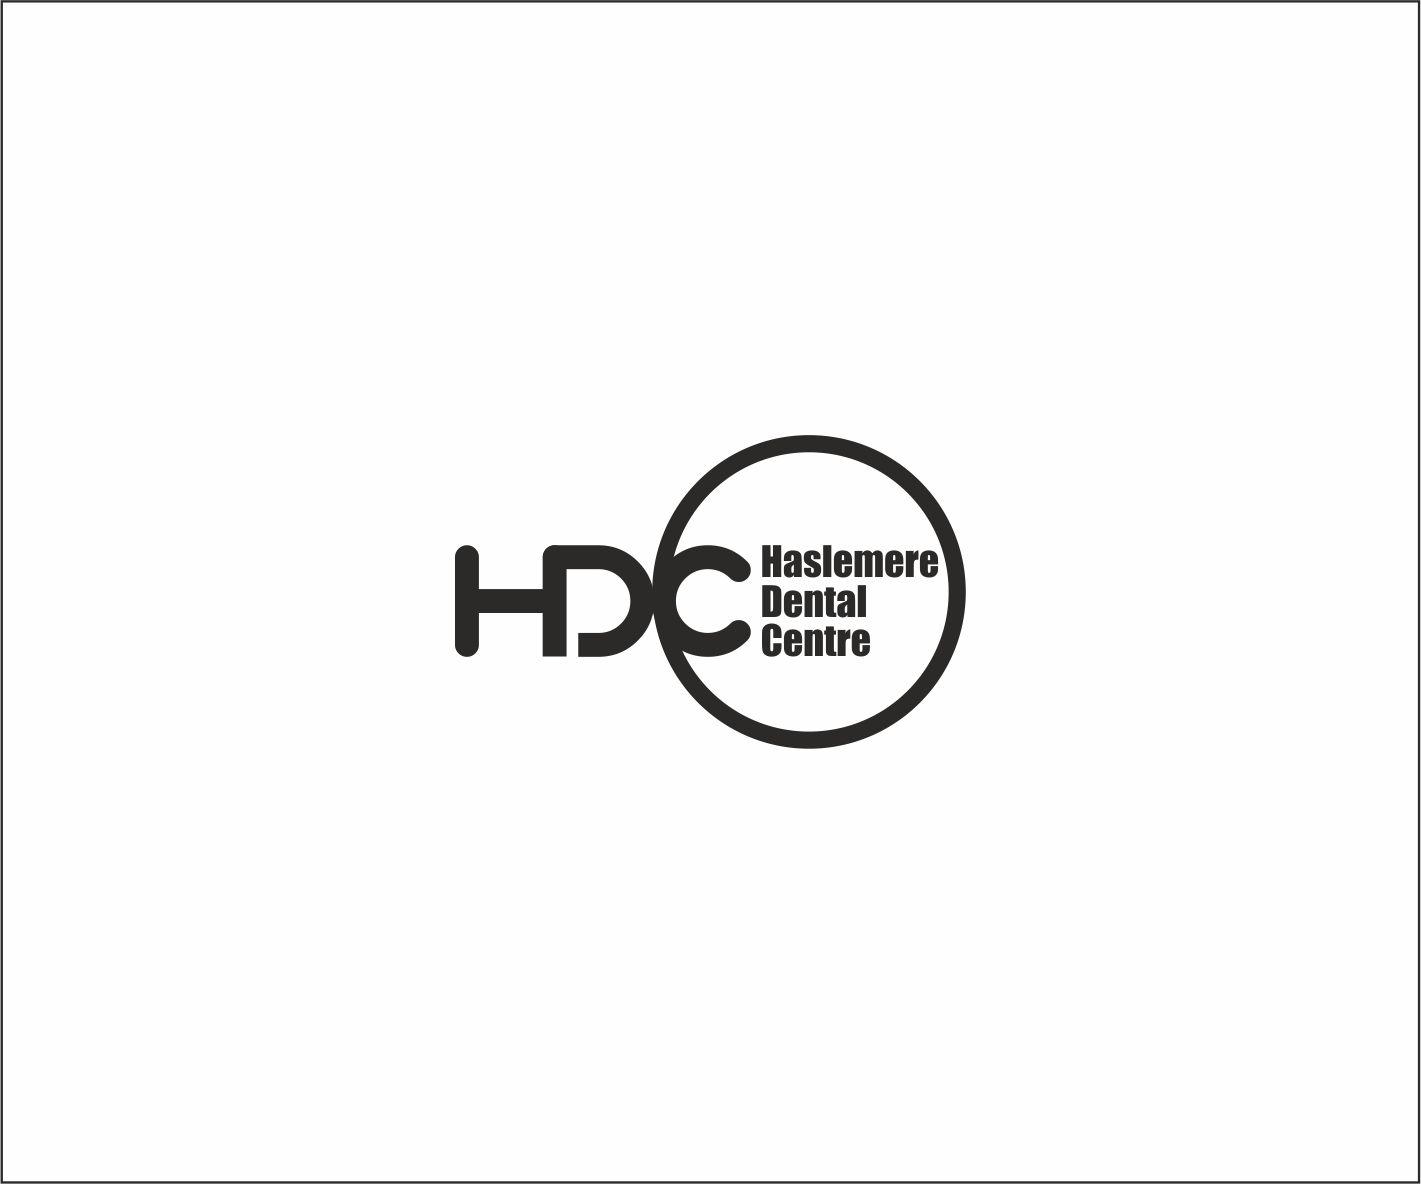 HDC Logo - Upmarket, Serious, Dental Logo Design for Haslemere Dental Centre ...